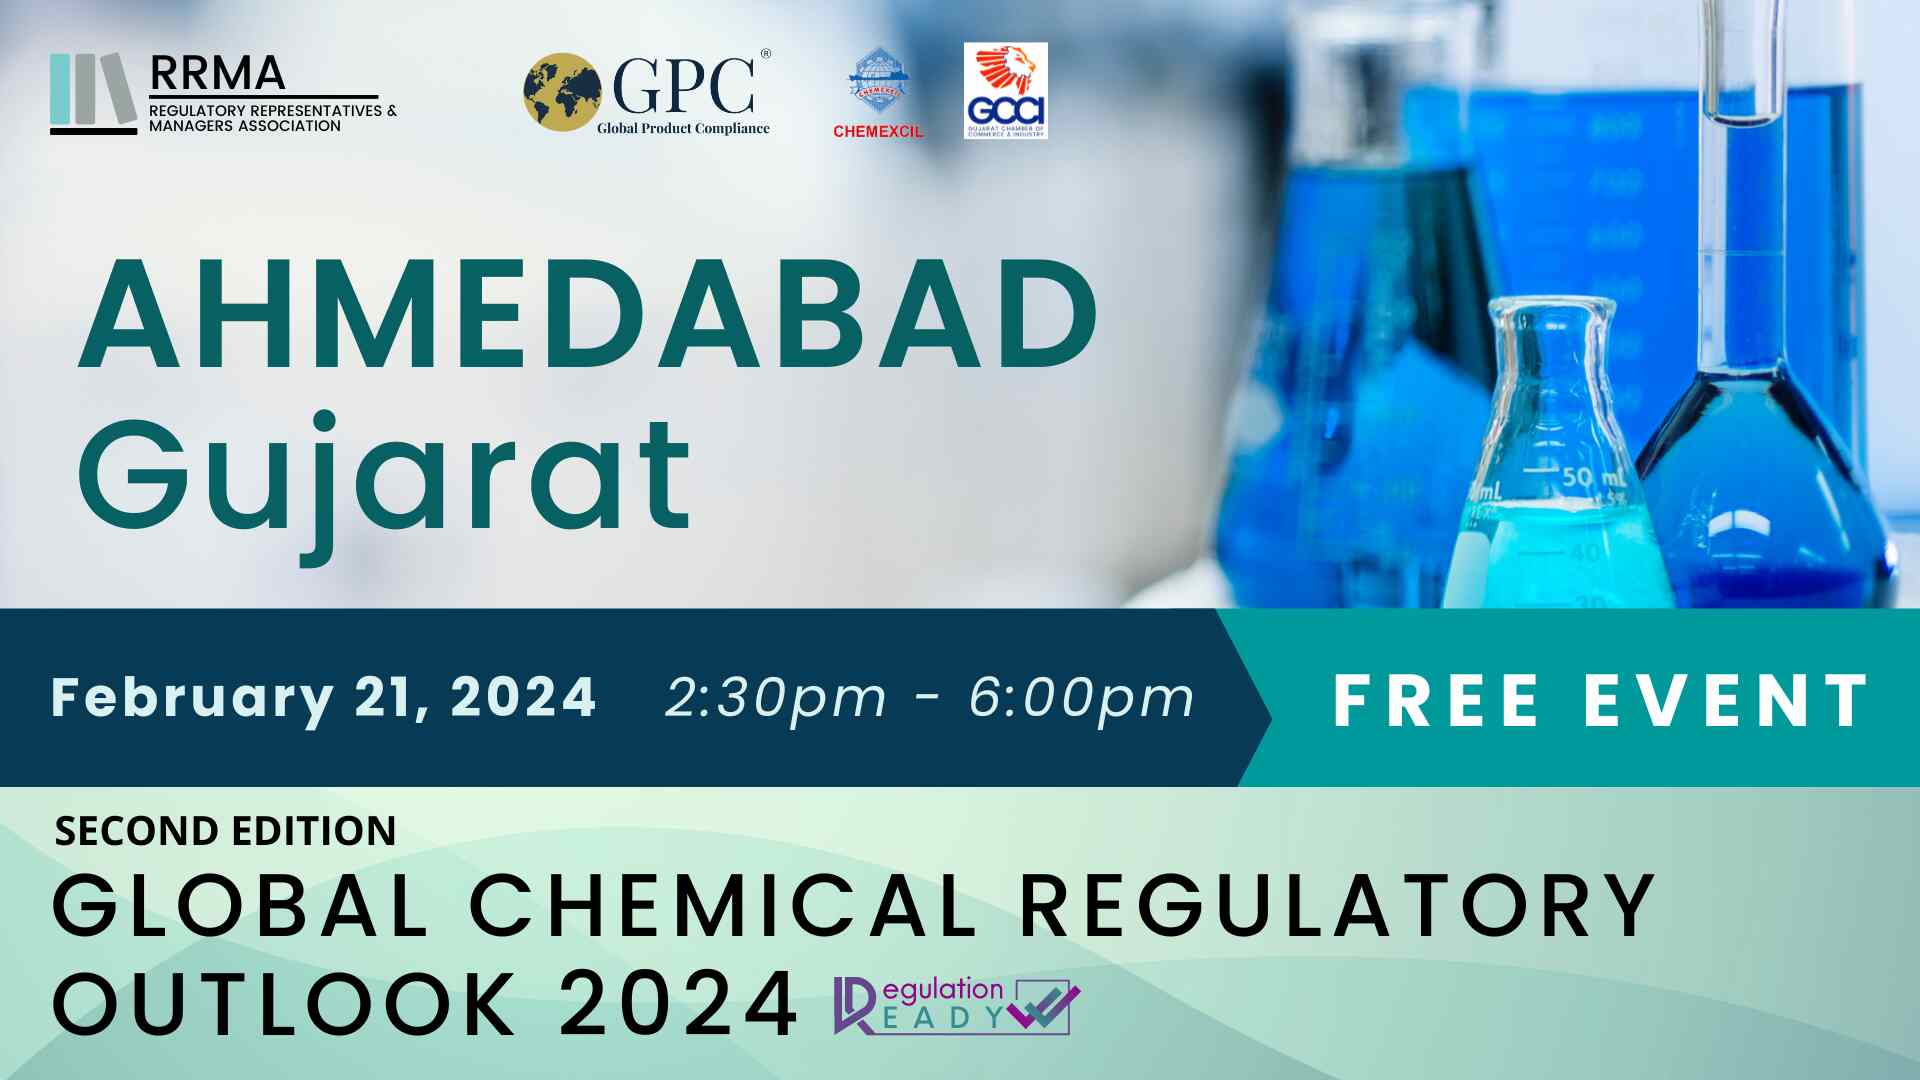 Global Chemicals Regulatory Outlook 2024 in Ahemdabad